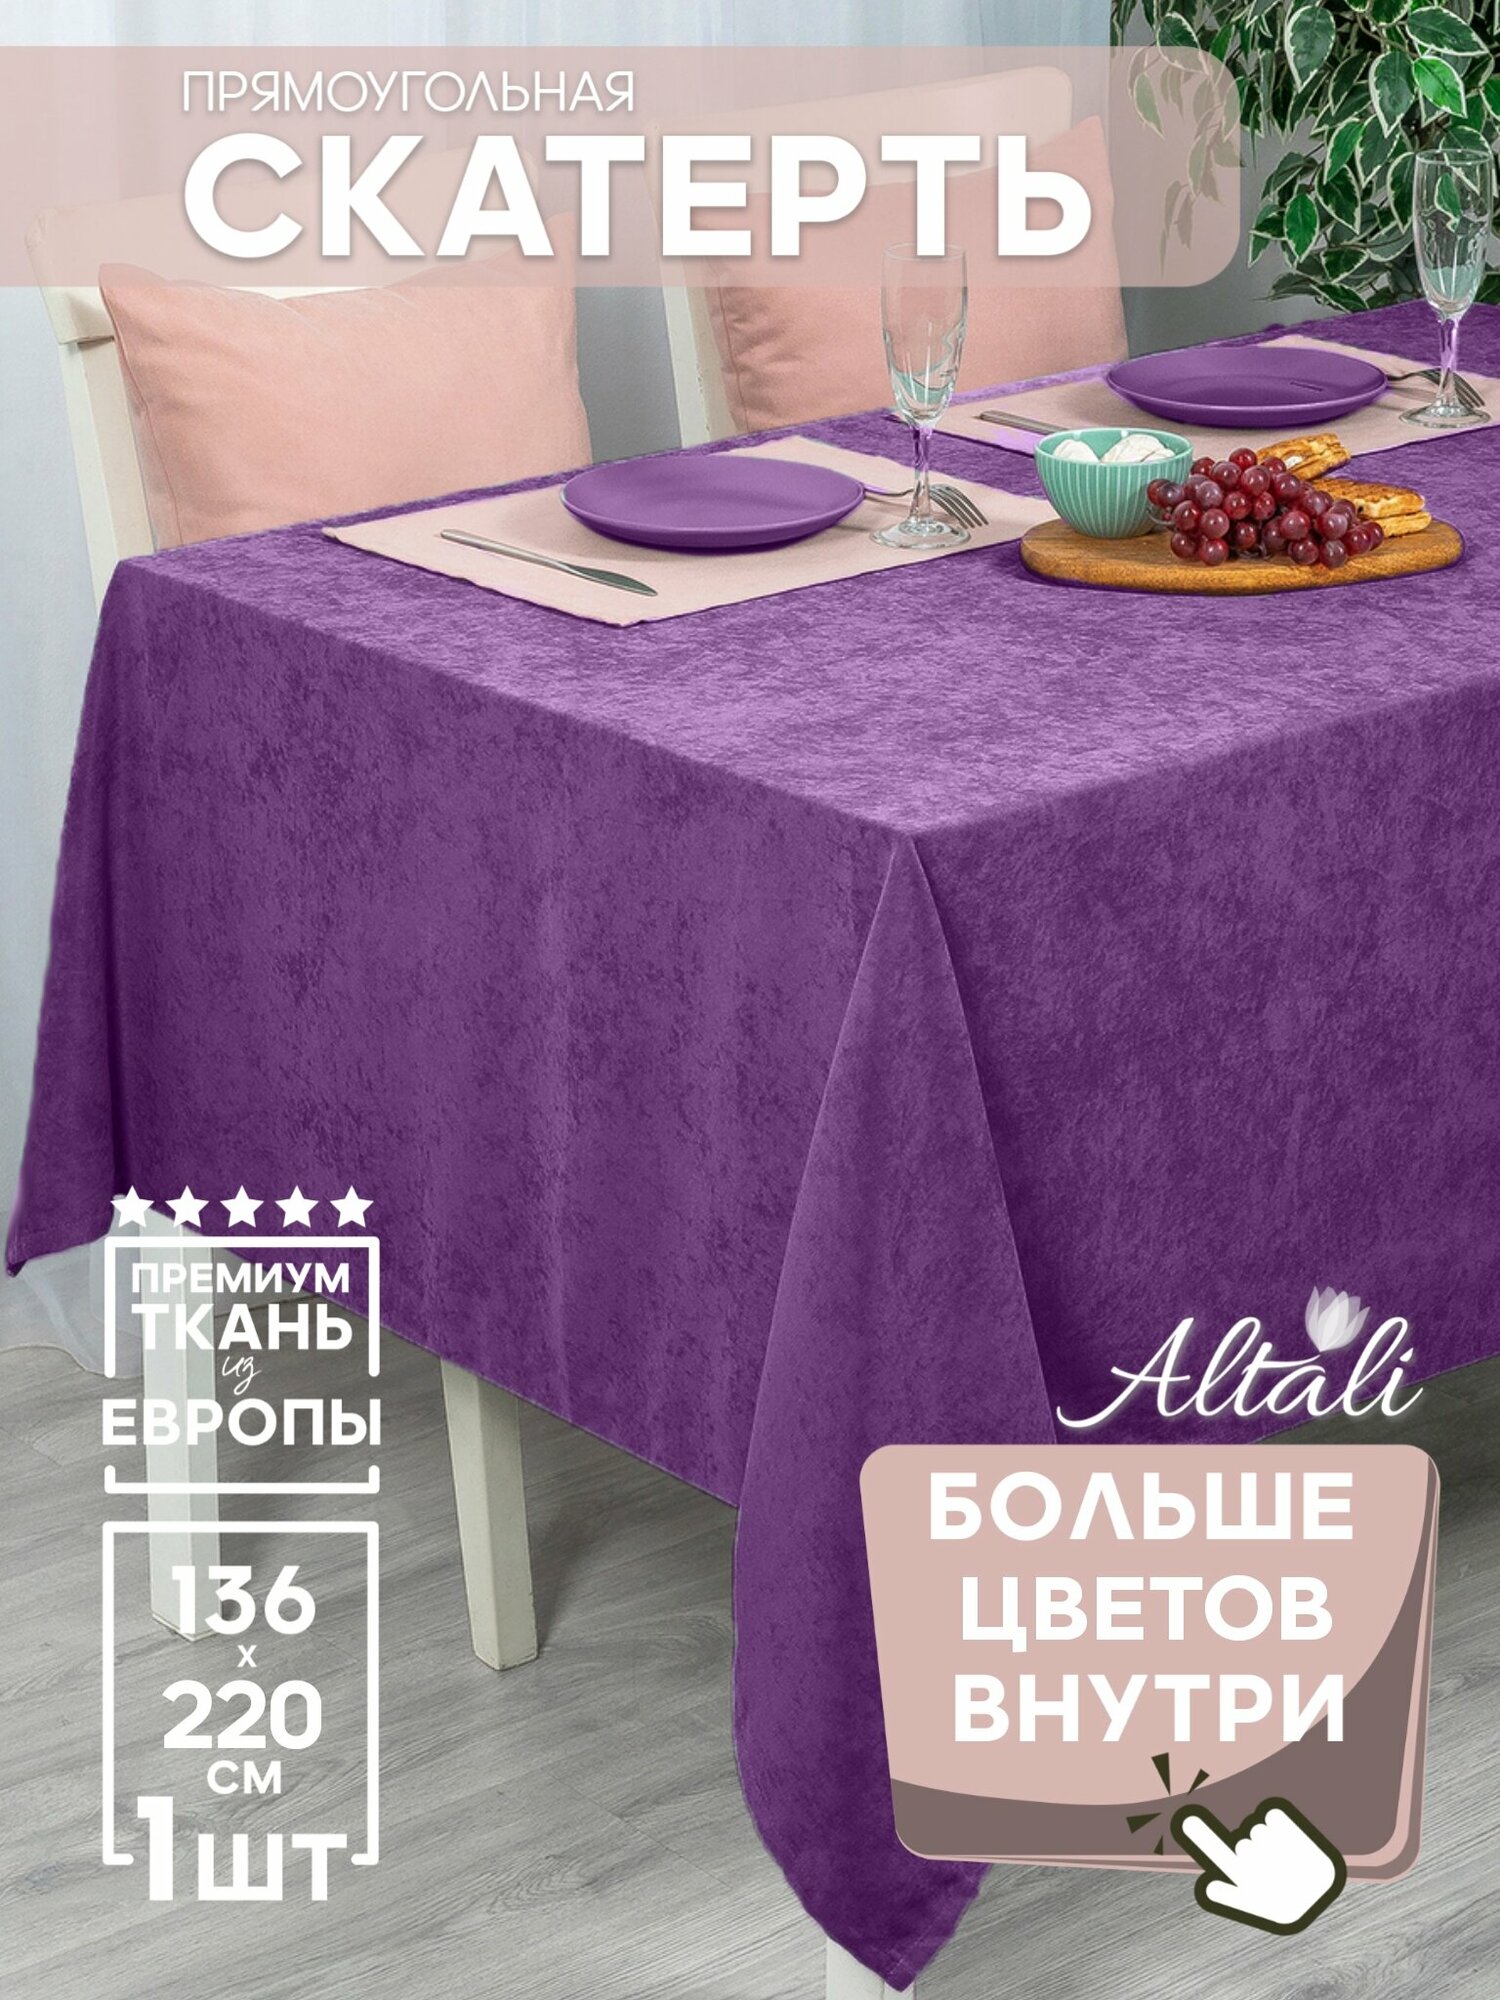 Скатерть кухонная прямоугольная на стол 136x220 Виноградный нектар / ткань велюр / для кухни, дома, дачи /Altali